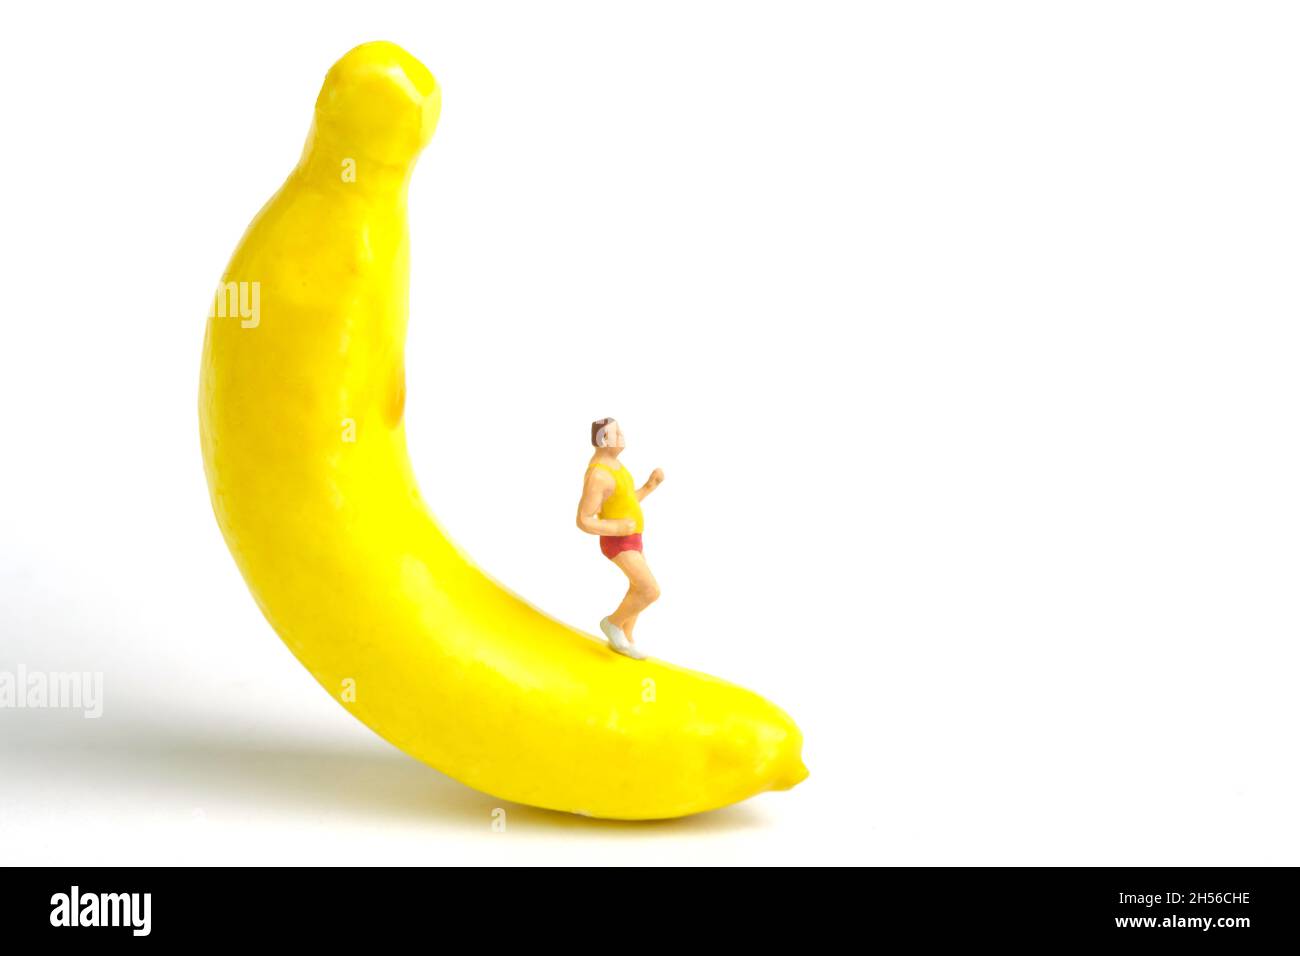 Fotografia di personaggi giocattolo in miniatura. Concetto di combustione dei grassi. Un uomo grasso che corre al di sopra della banana frutta, isolato su sfondo bianco. Foto immagine Foto Stock